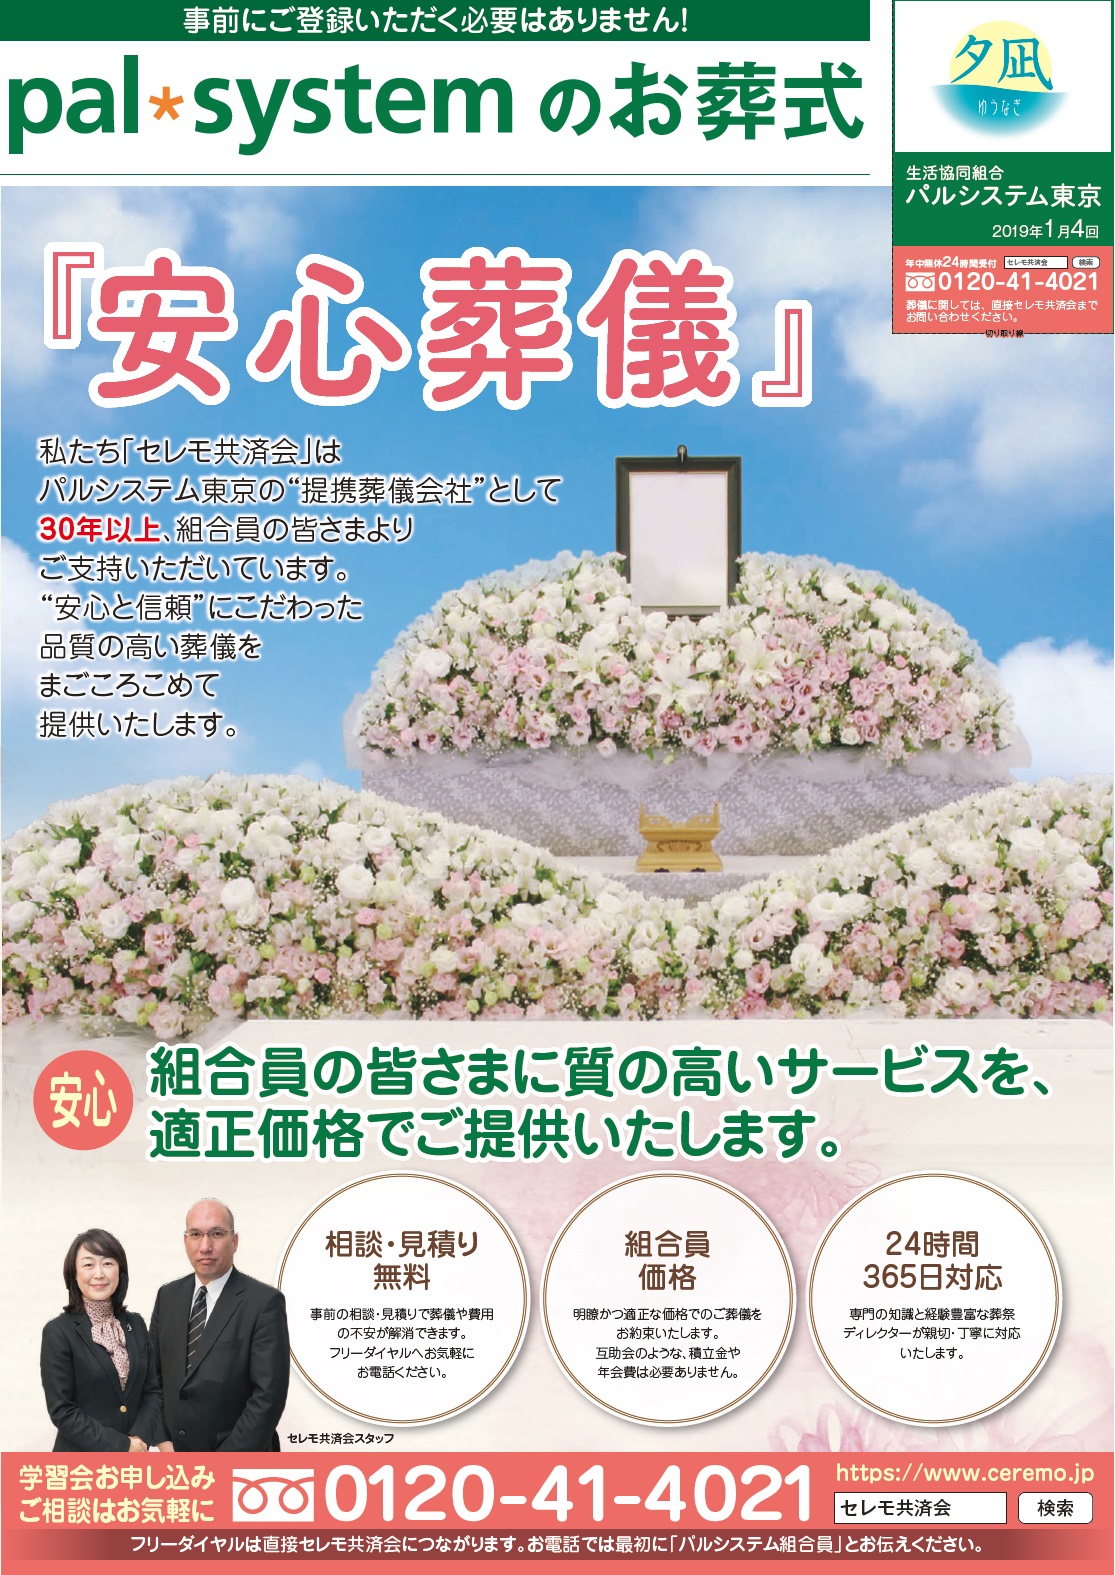 生活協同組合パルシテム東京 palsystemのお葬式 夕凪葬 葬儀チラシ 2019年1月企画